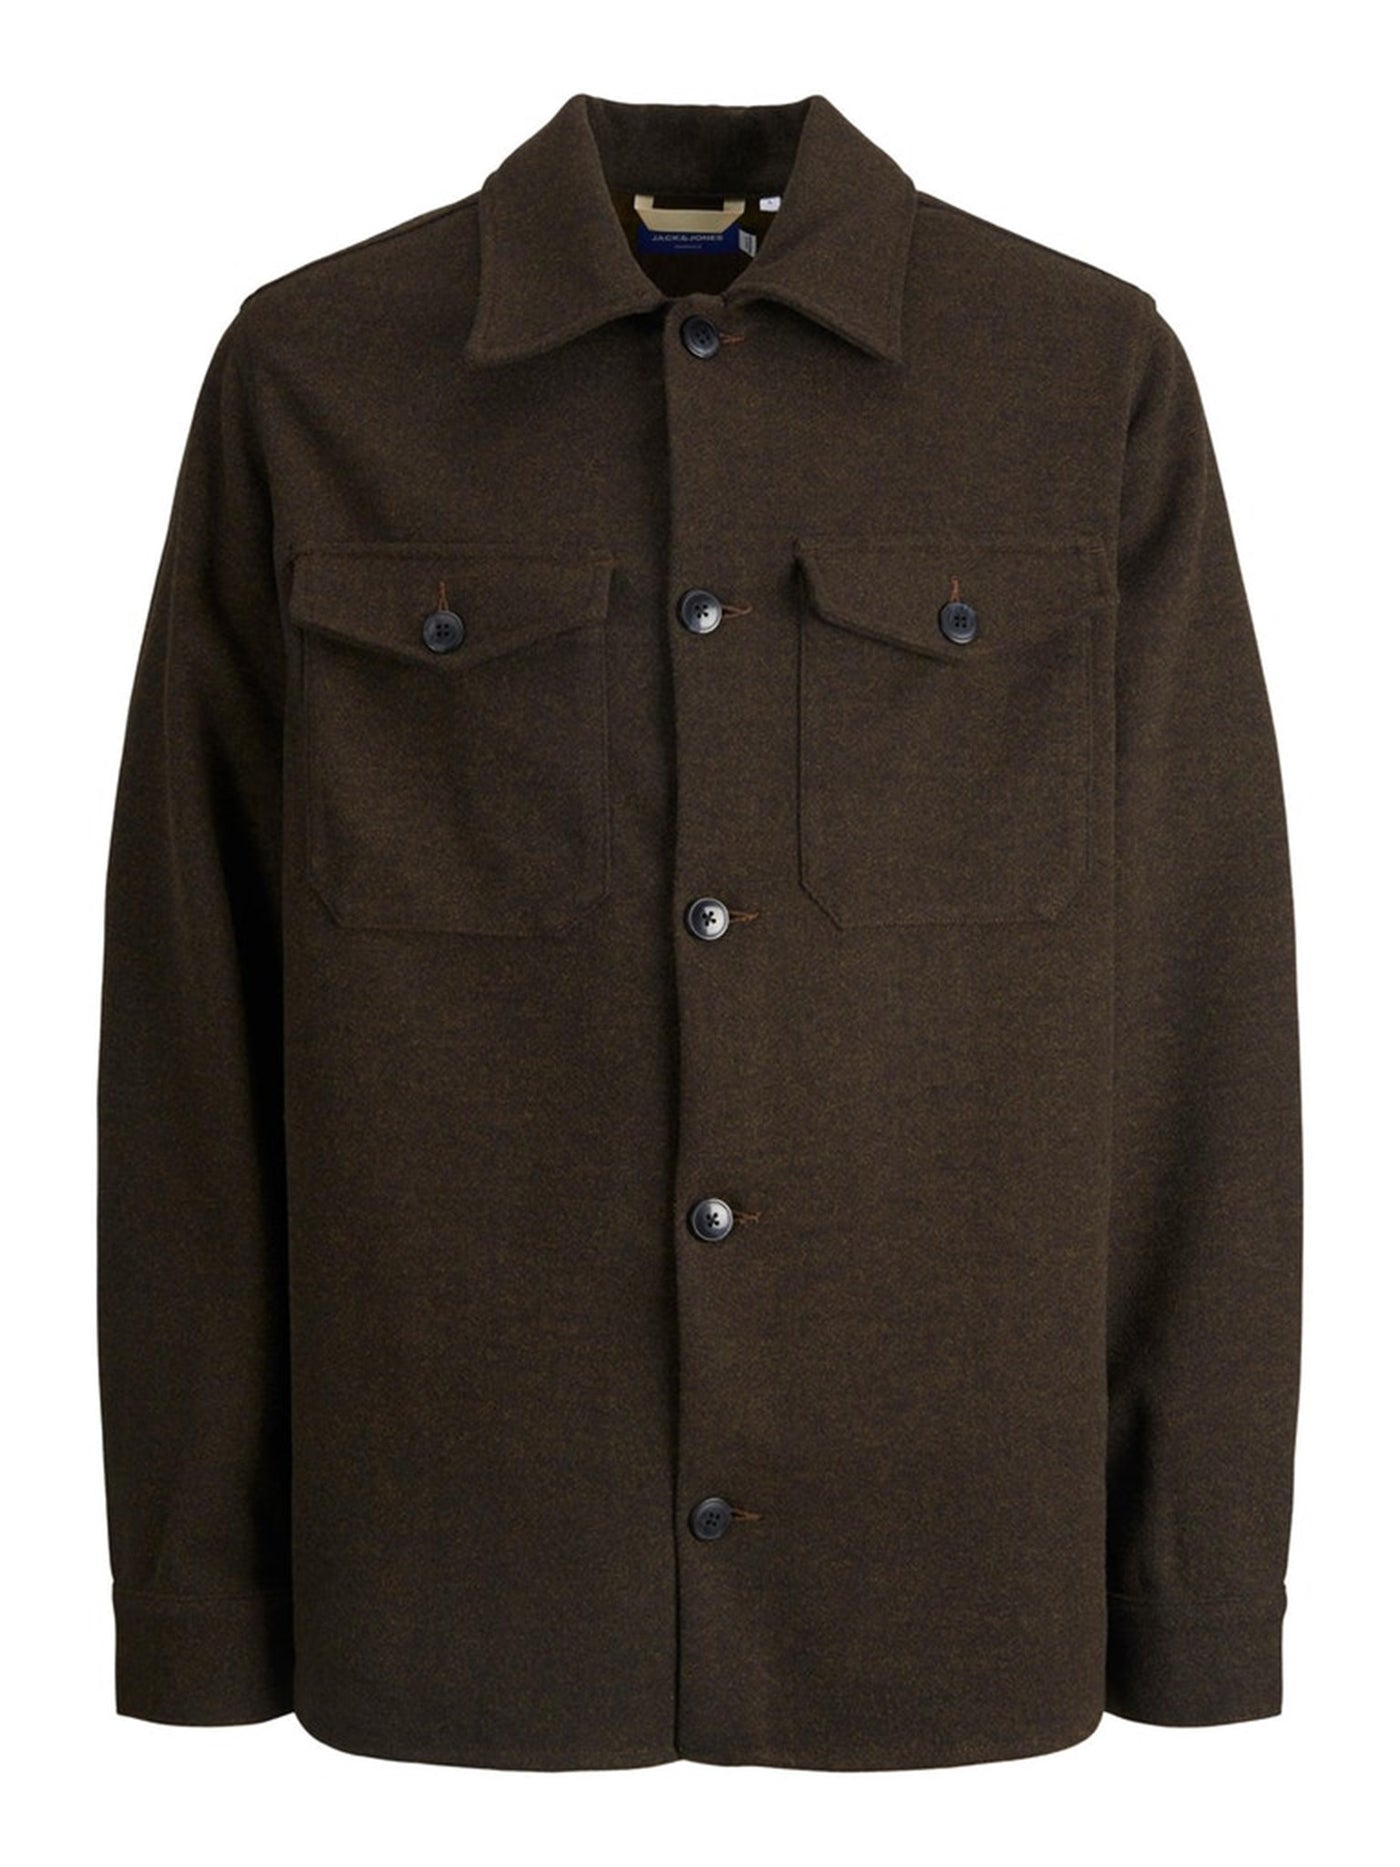 Ollie Shirt Jacket - Seal Brown - Jack & Jones - Brown